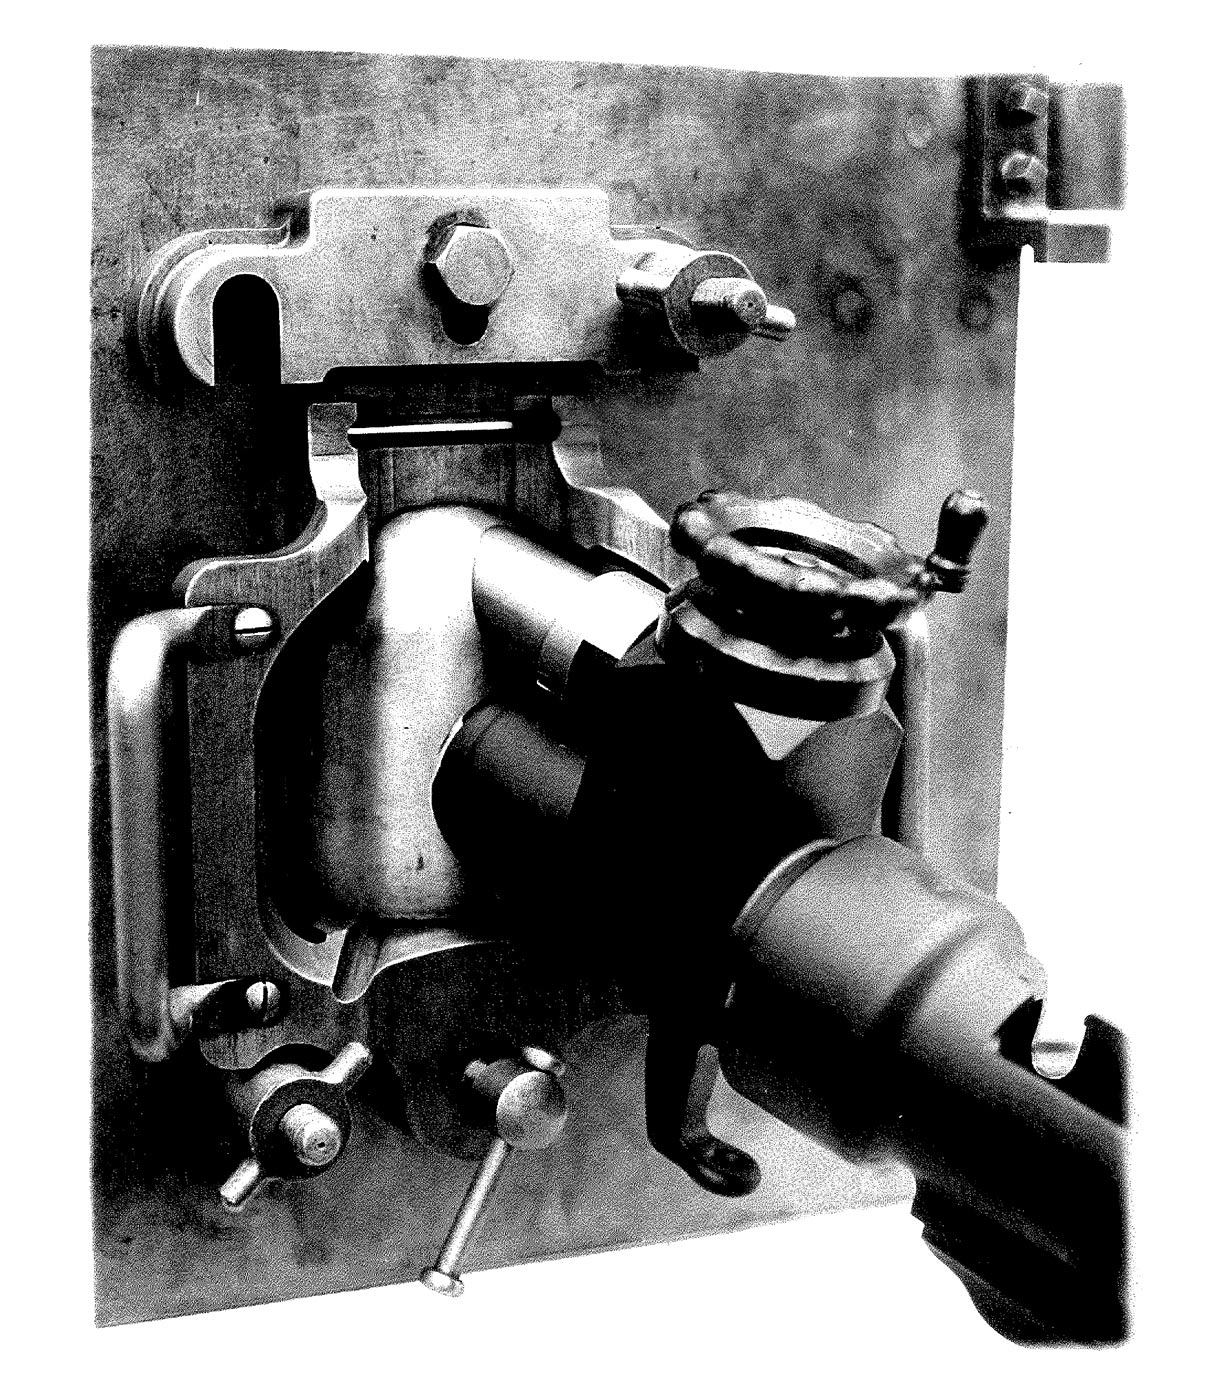 Mortier de 50 mle 35 - Montage sur porte blindée